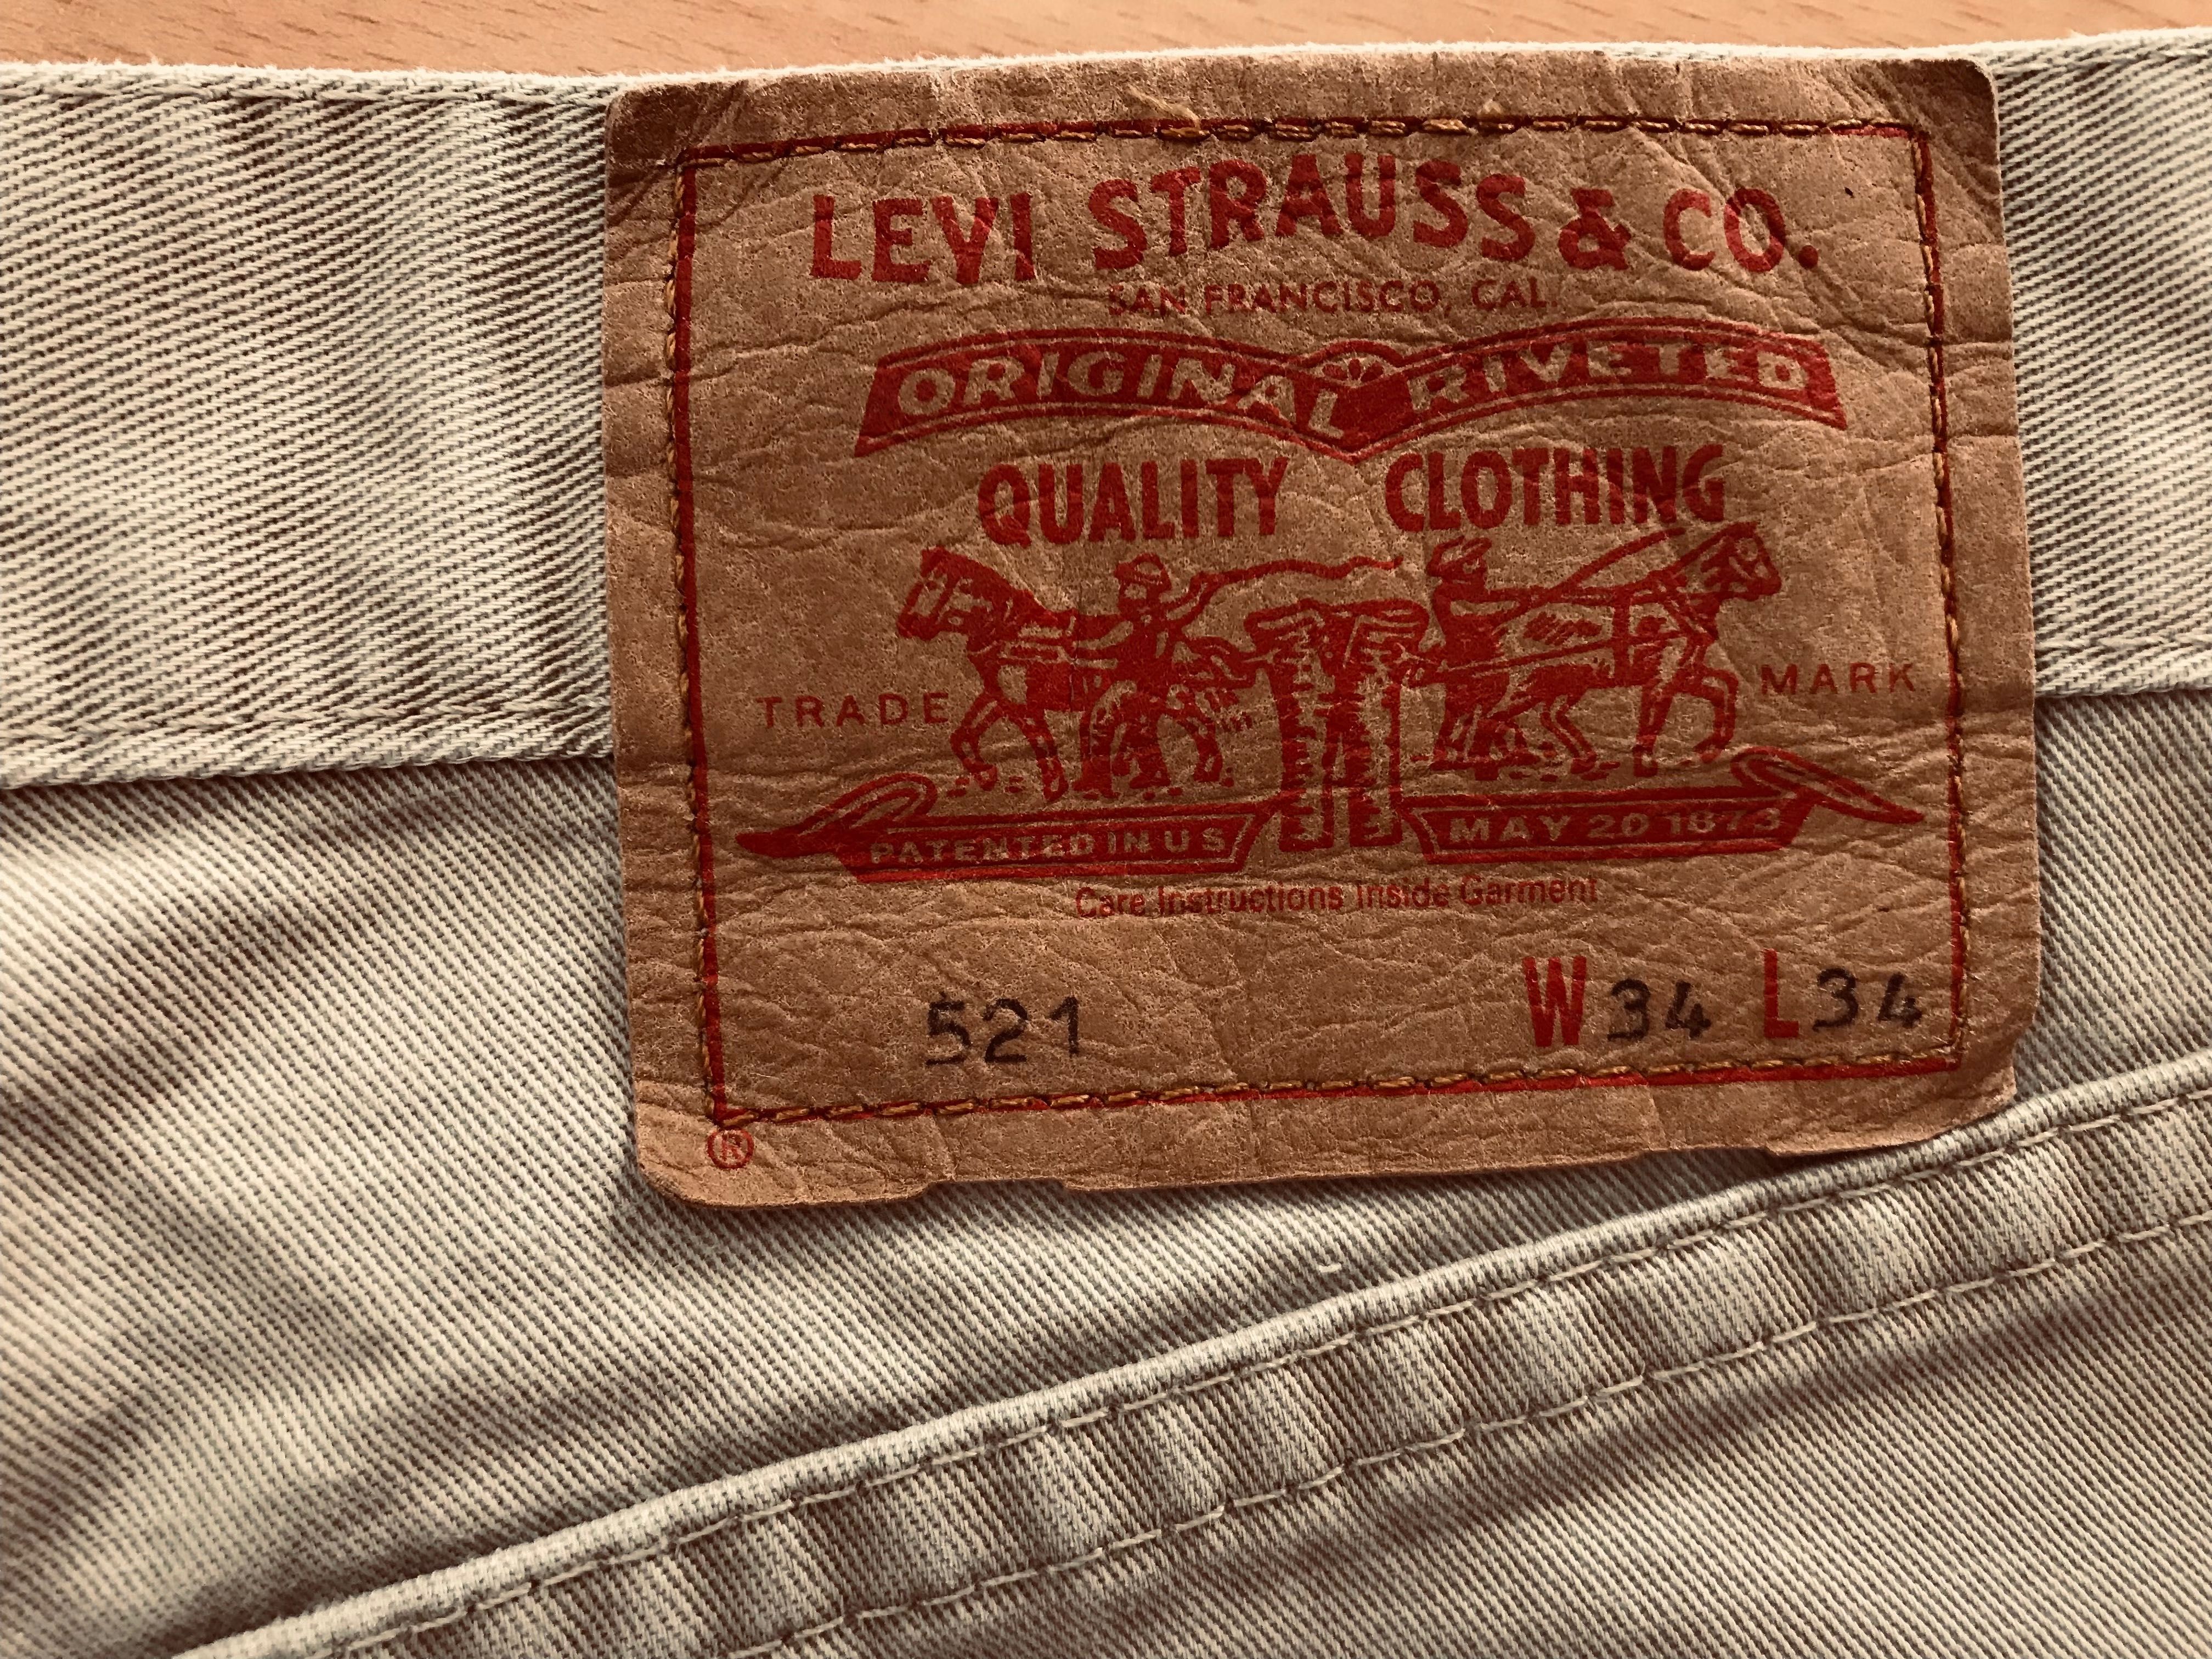 Spodnie marki Levi Strauss   34x34  521